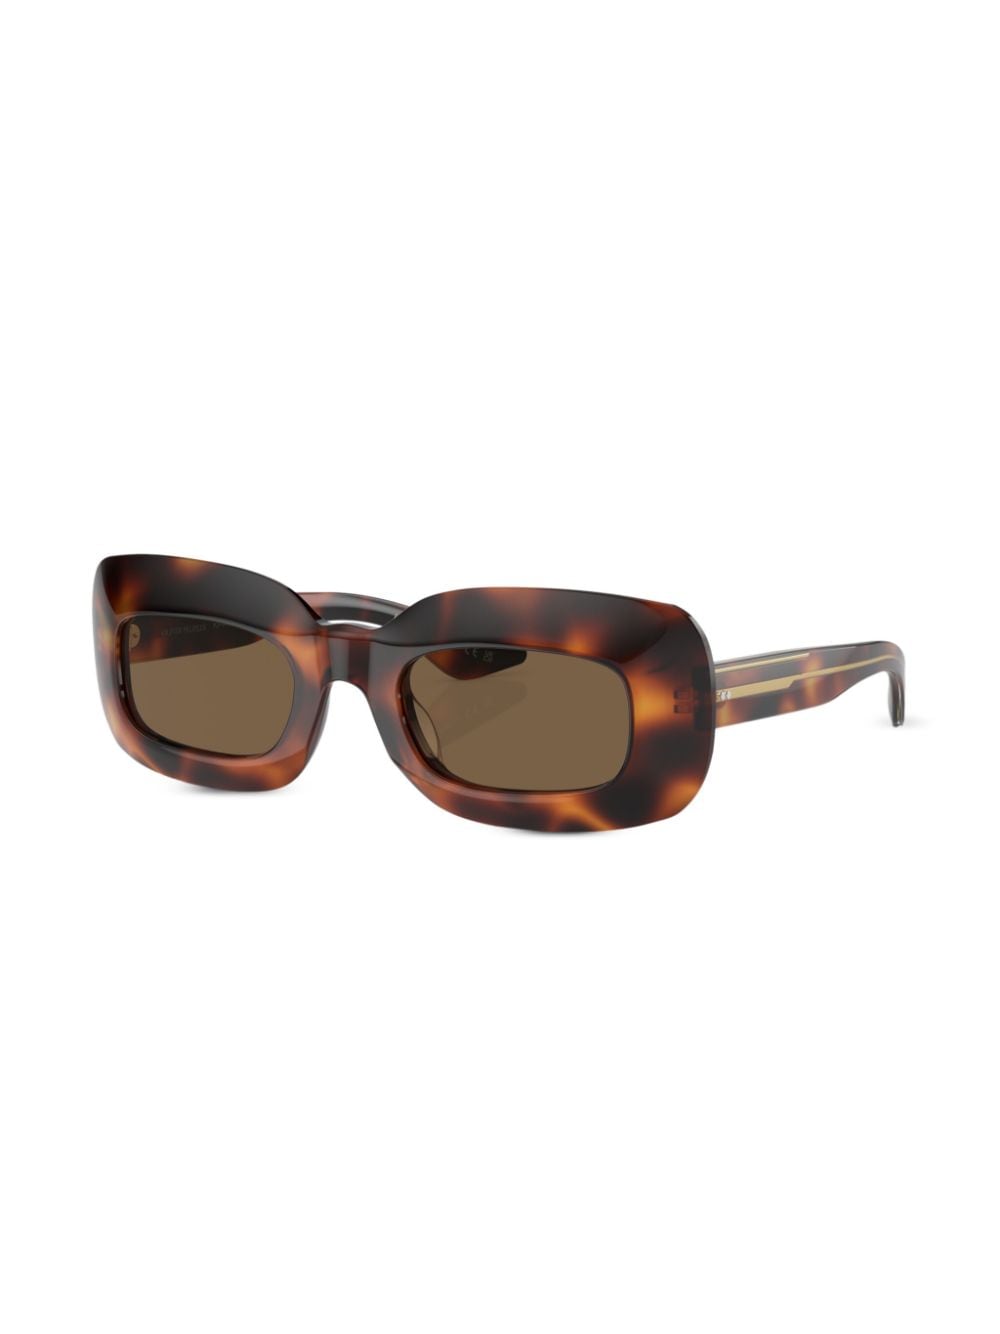 Oliver Peoples x Khaite 1966C zonnebril met rechthoekig montuur - Bruin